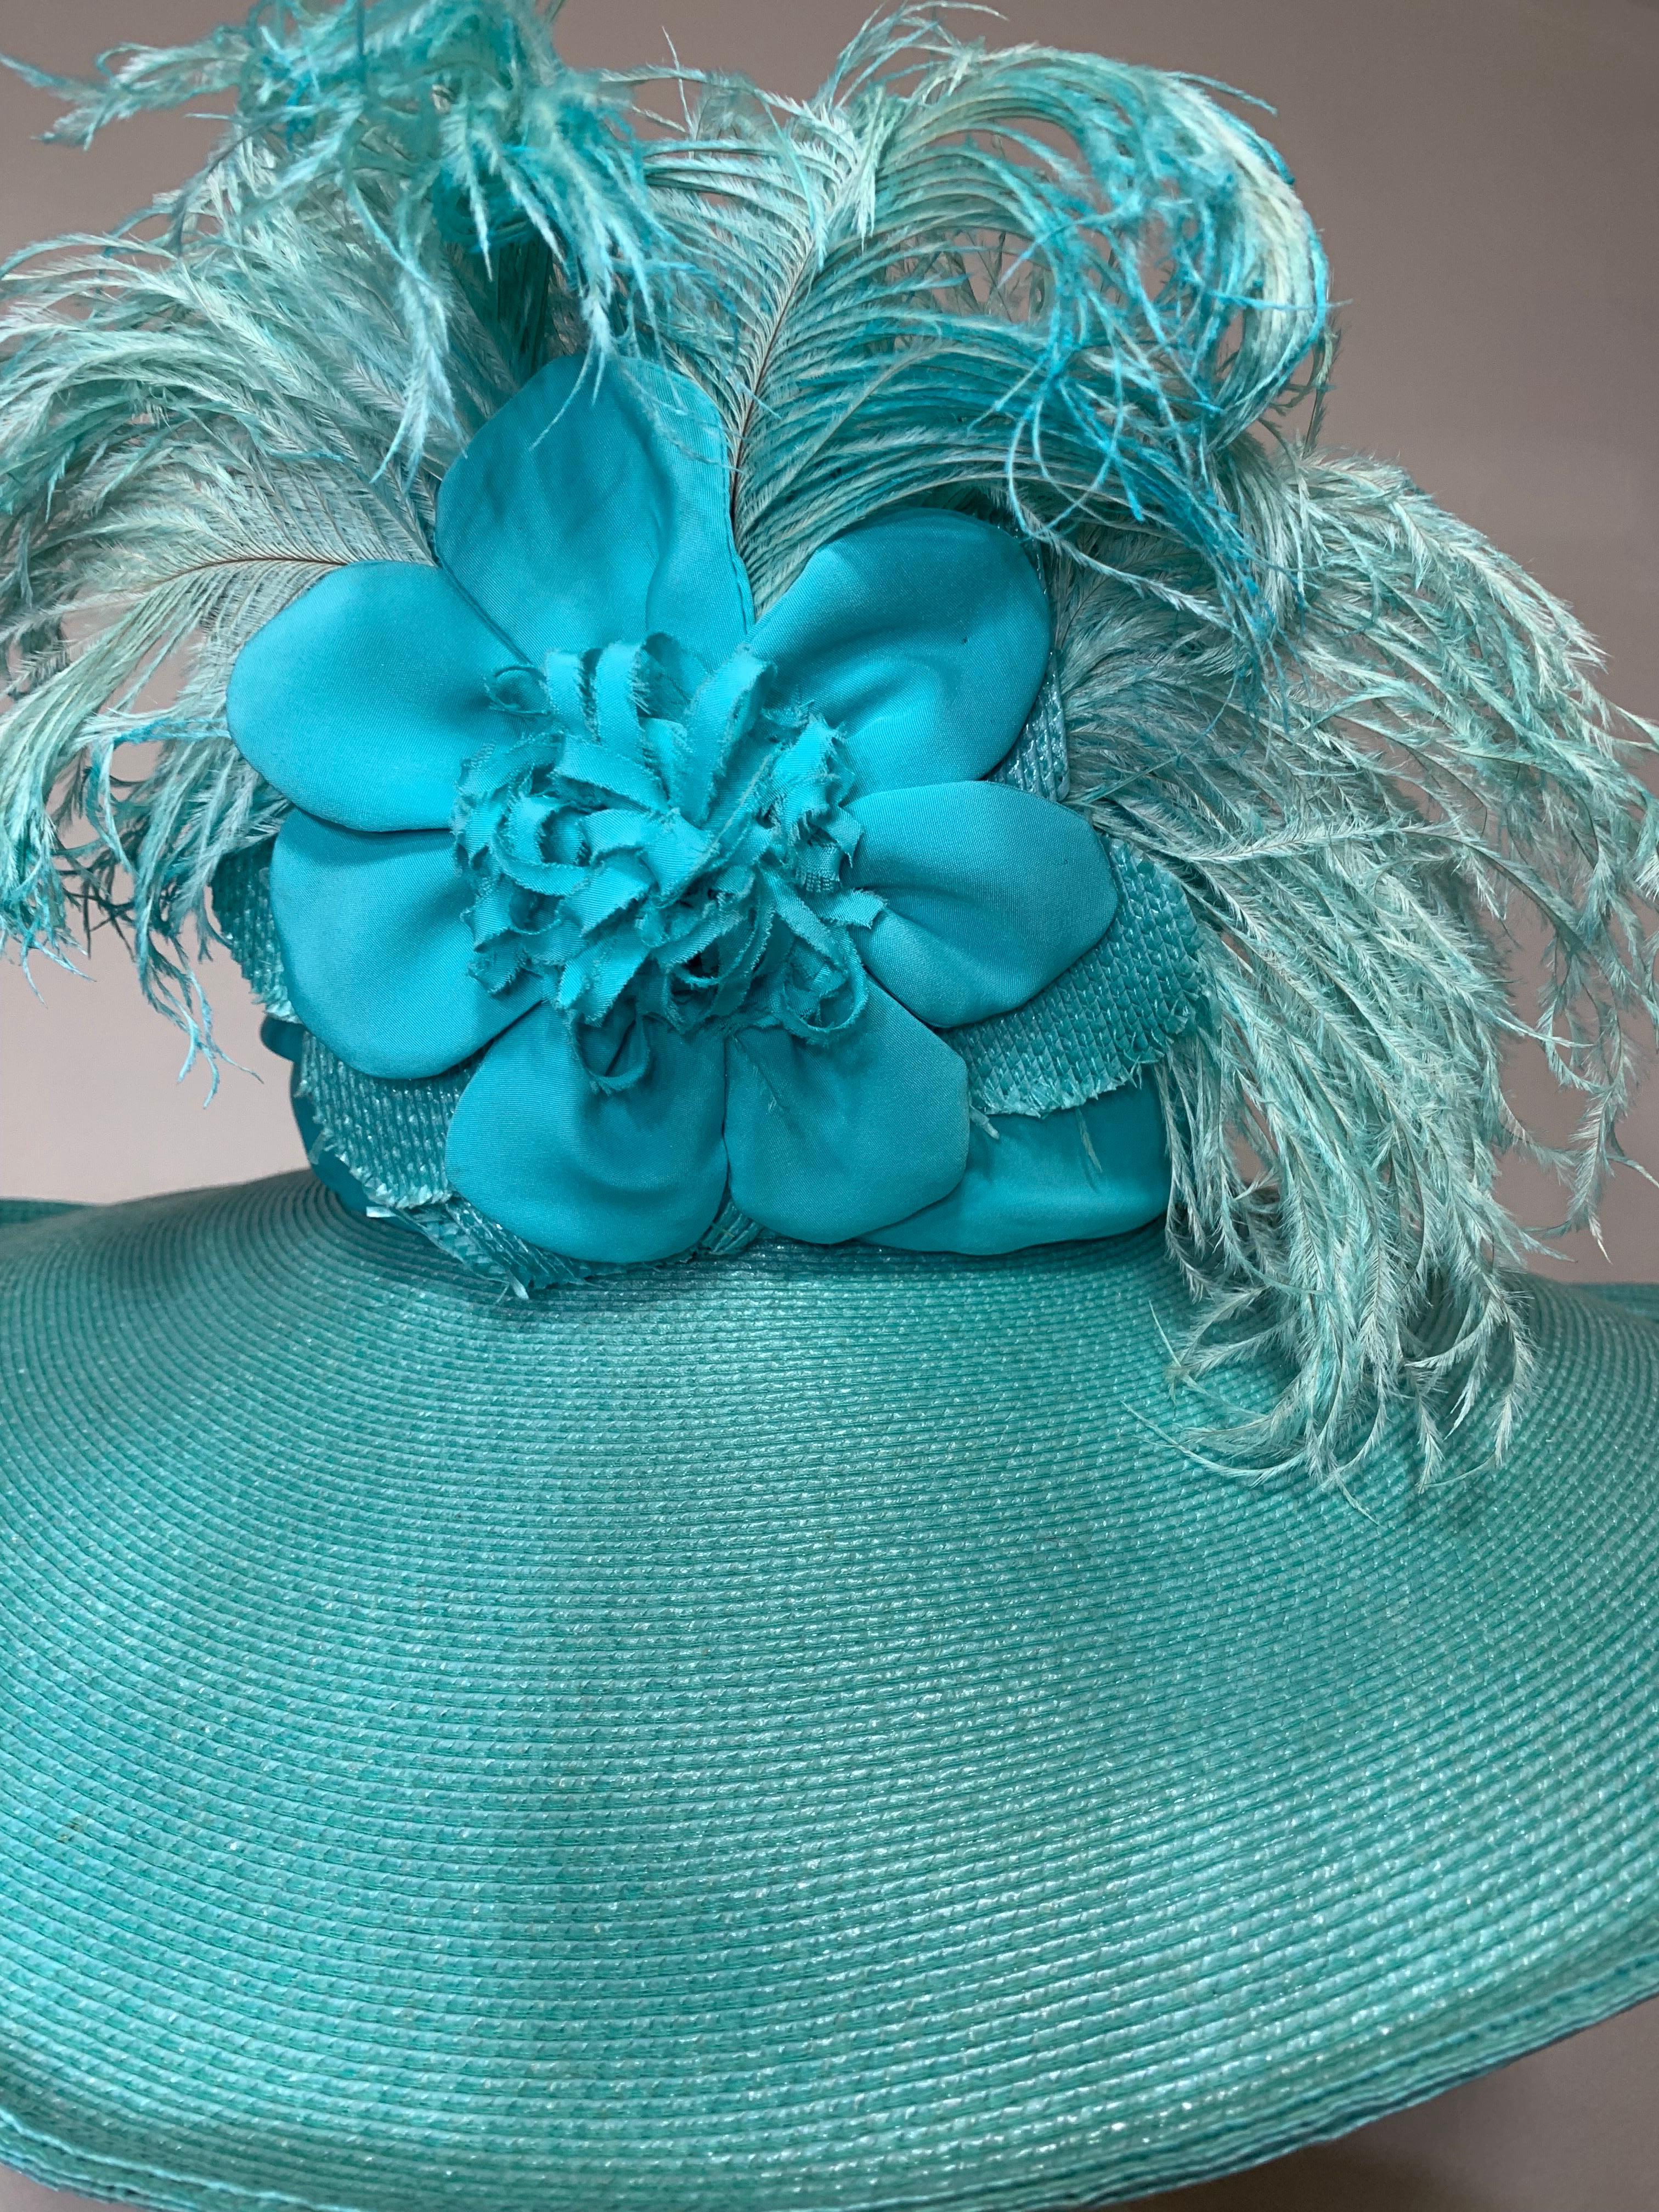 2005 Maison Michel Aqua Straw Wide Brim Hat w Extravagant Feather & Floral Trim For Sale 7